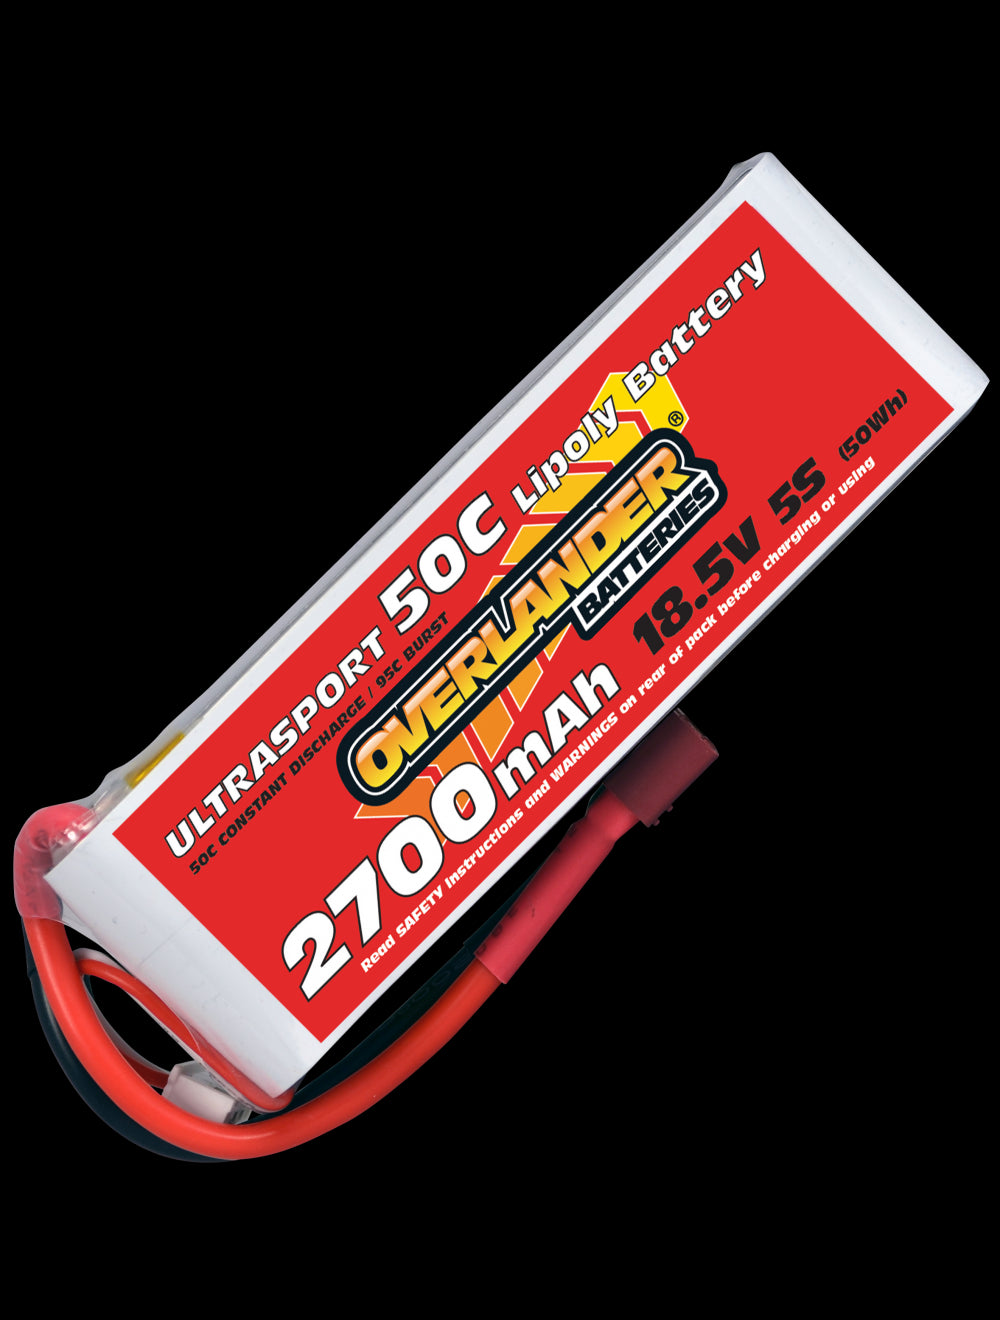 Overlander 2700mAh 18.5V 5S 50C Ultrasport LiPo Battery - XT60 Connector 3224